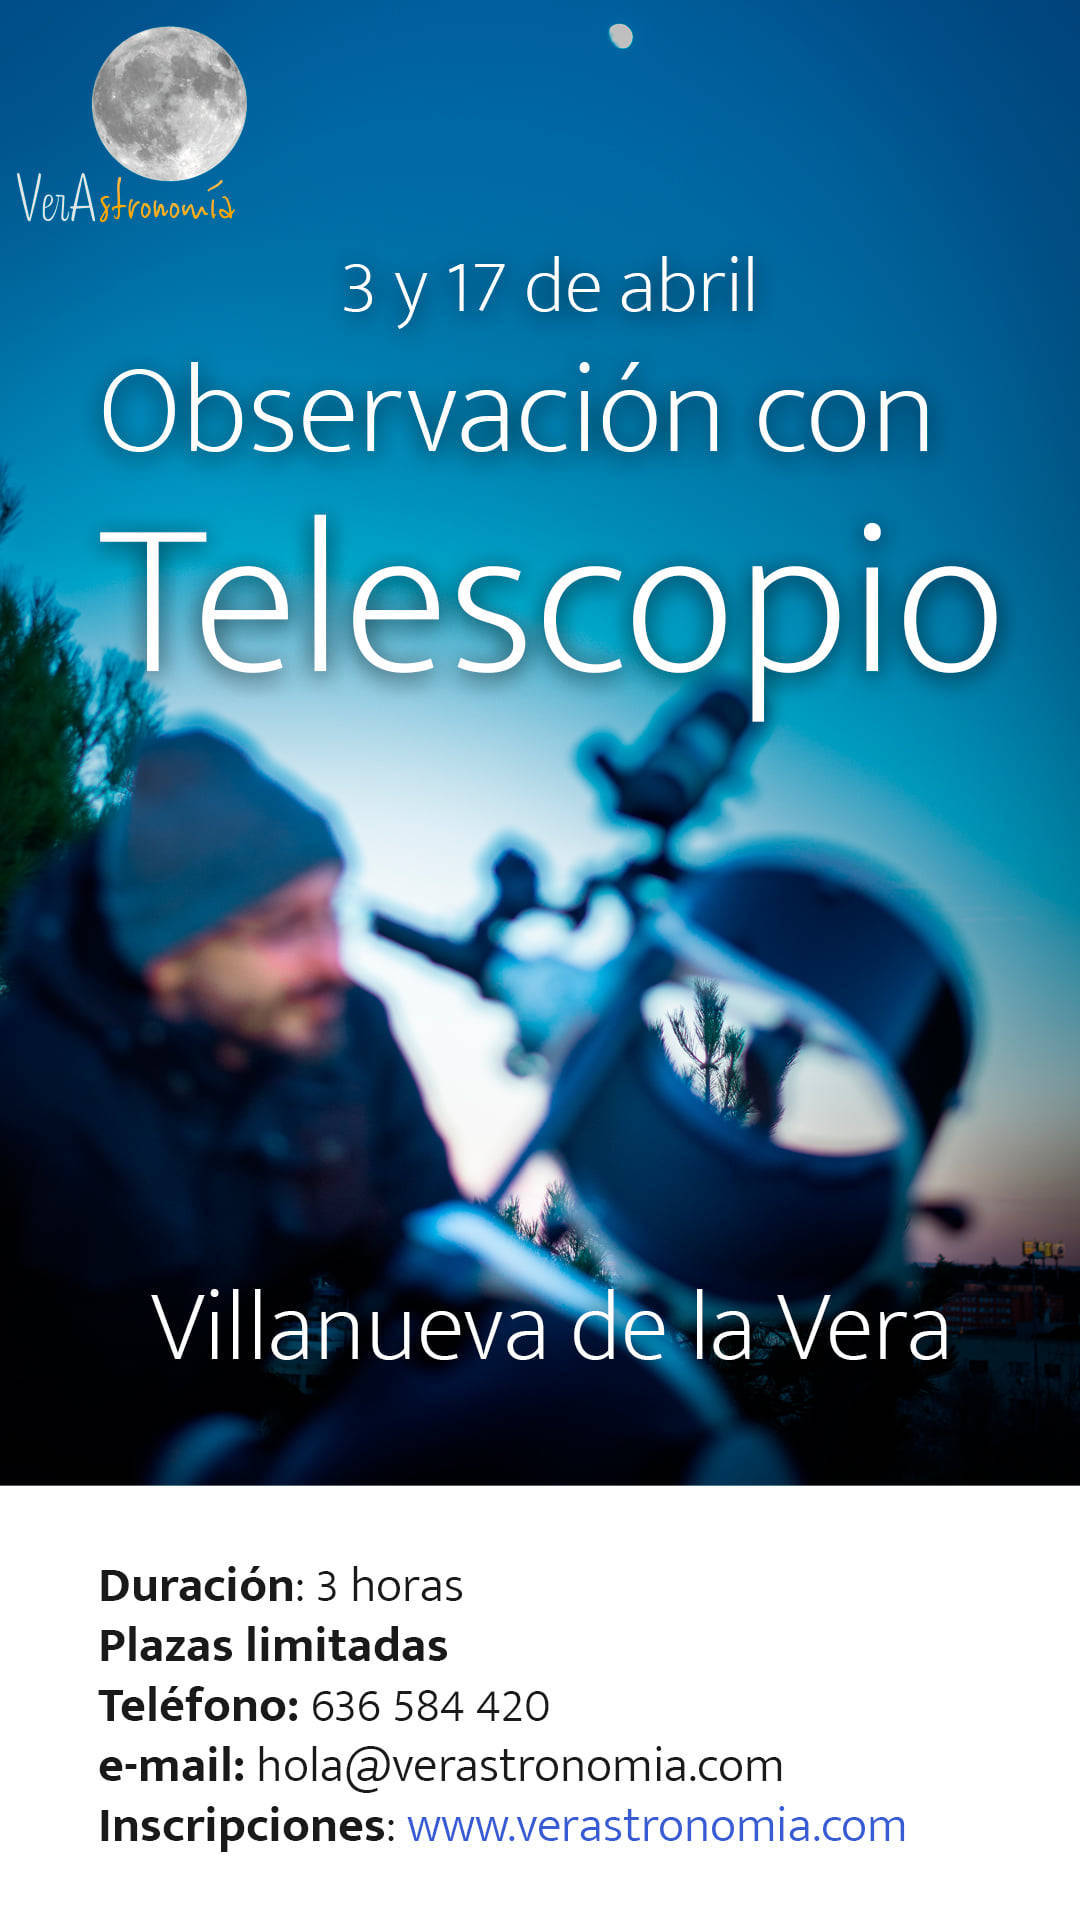 Observación con telescopio (abril 2021) - Villanueva de la Vera (Cáceres)